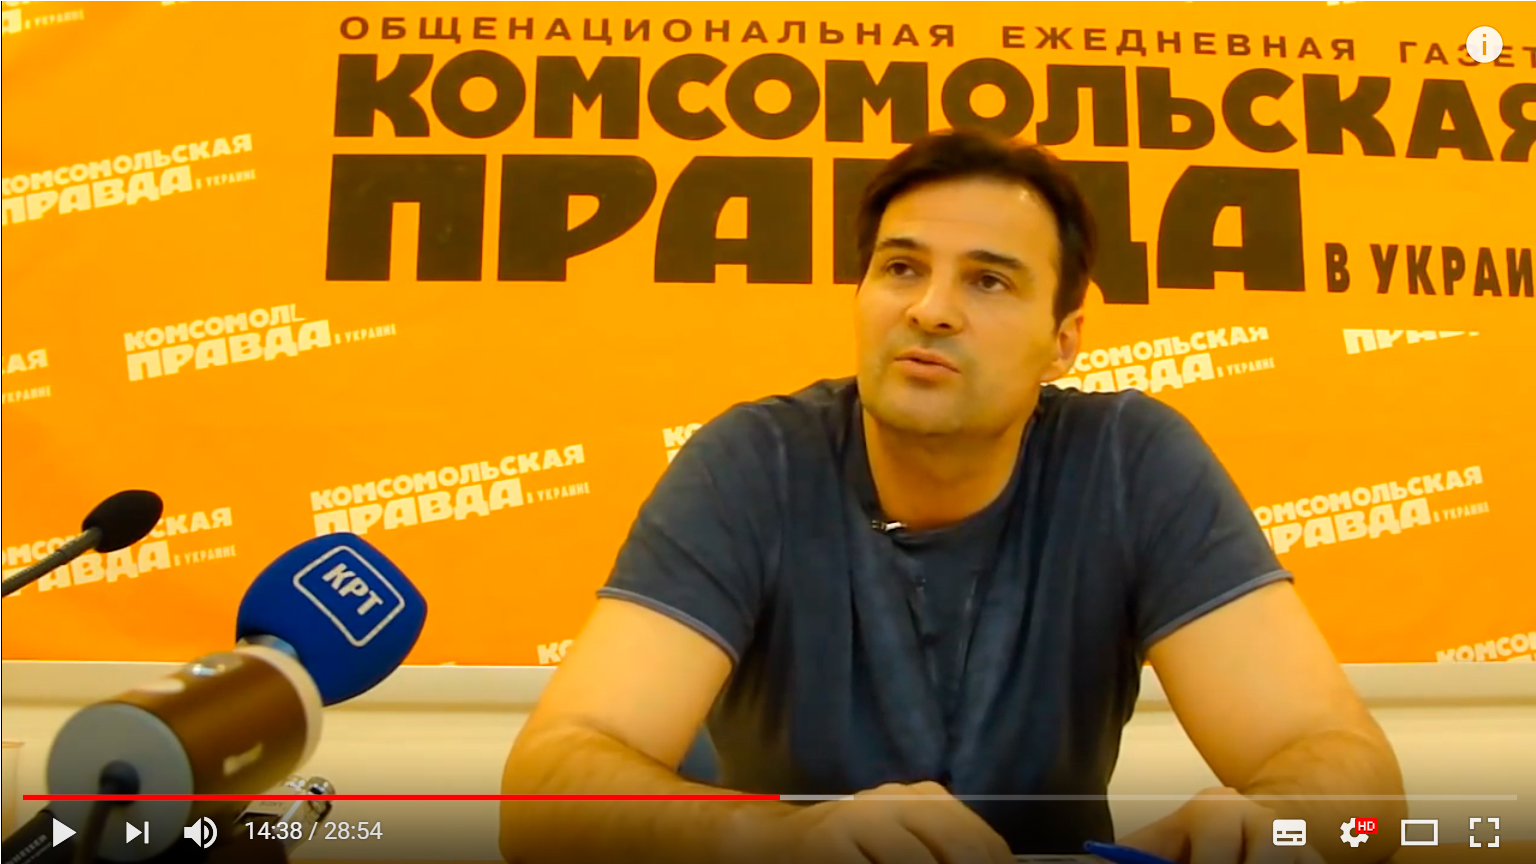 ANTIGO: пресс-конференция Александра Дьяченко в газете Комсомольская Правда (Украина)